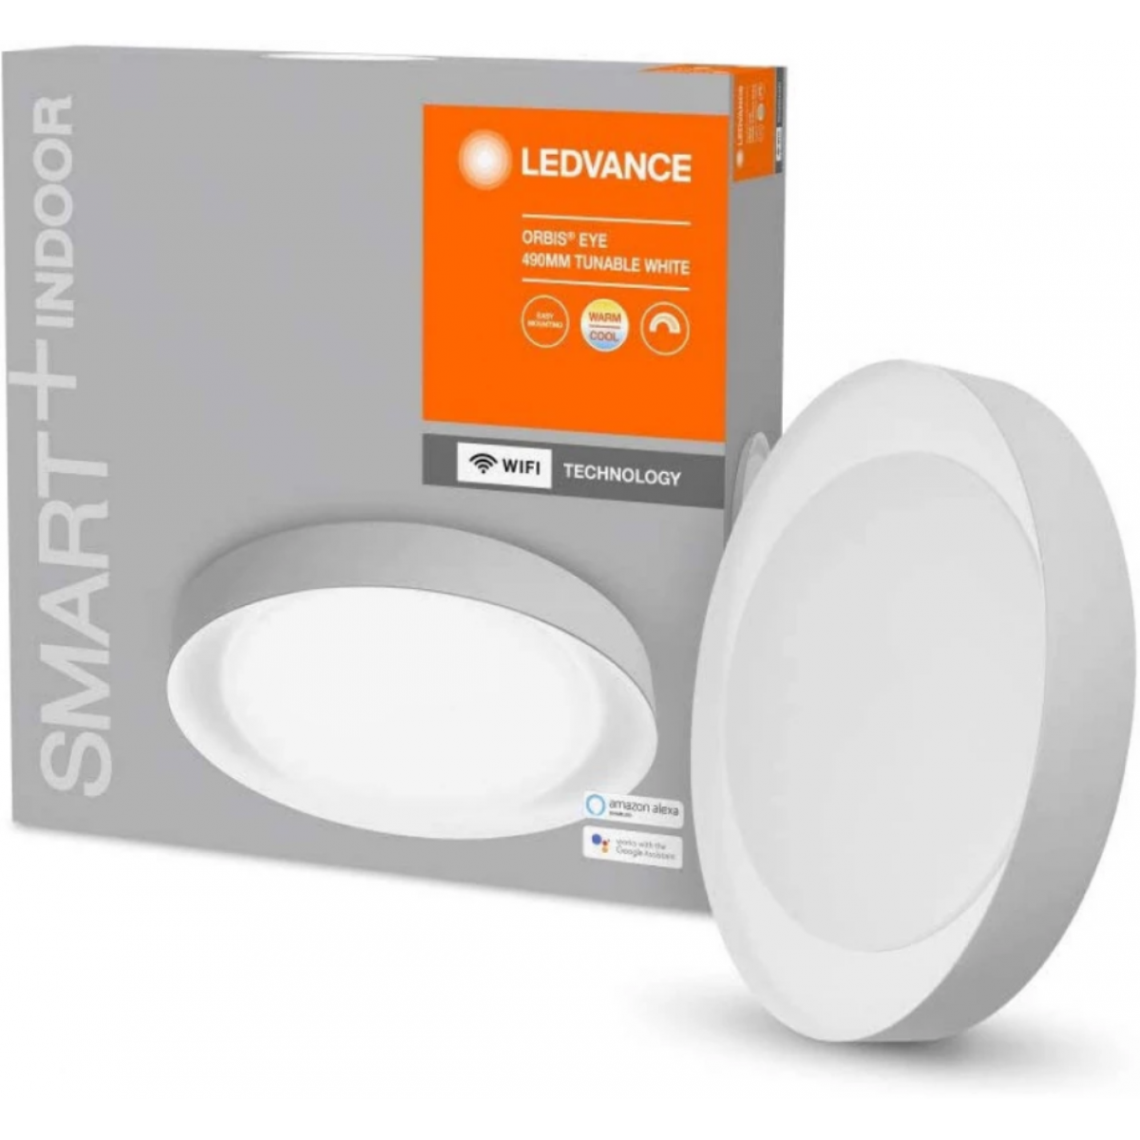 Ledvance - Plafonnier connecté Smart+ WIFI Orbis Ceiling Eye - Variation de blancs - 490mm - Blanc - Lampe connectée